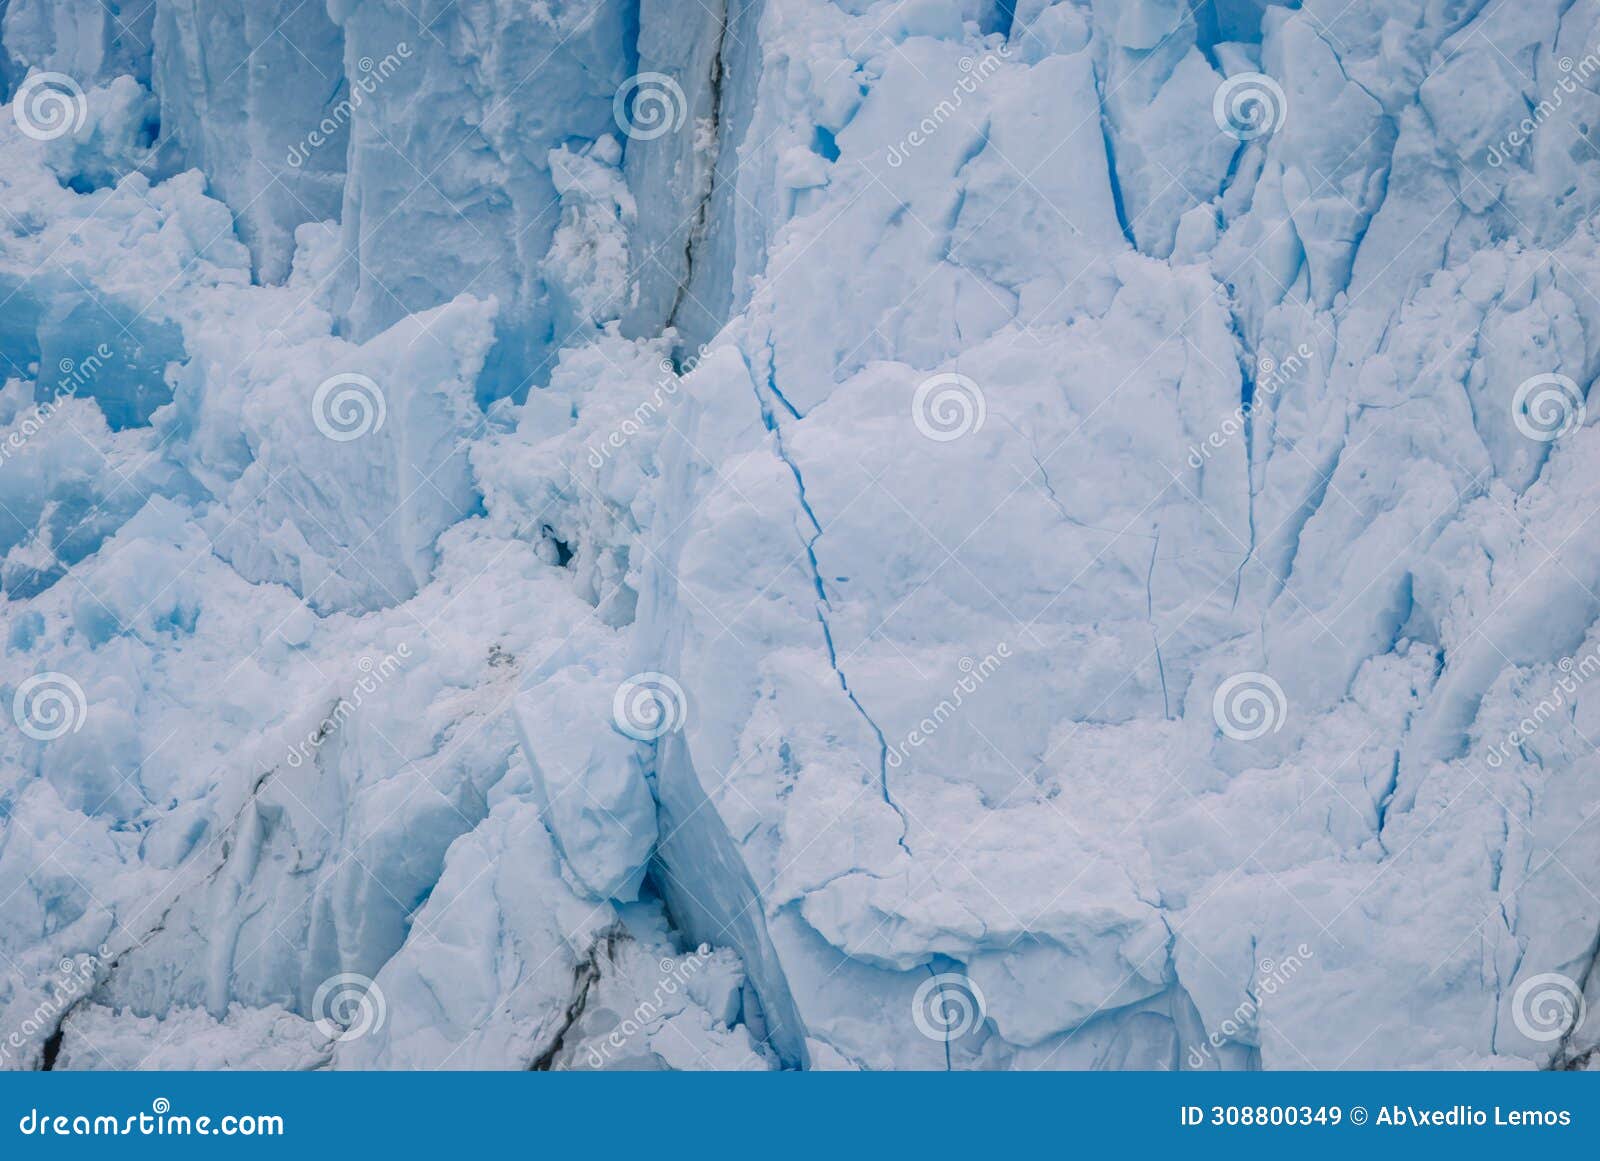 a close-up view of the ice of perito moreno's glacier